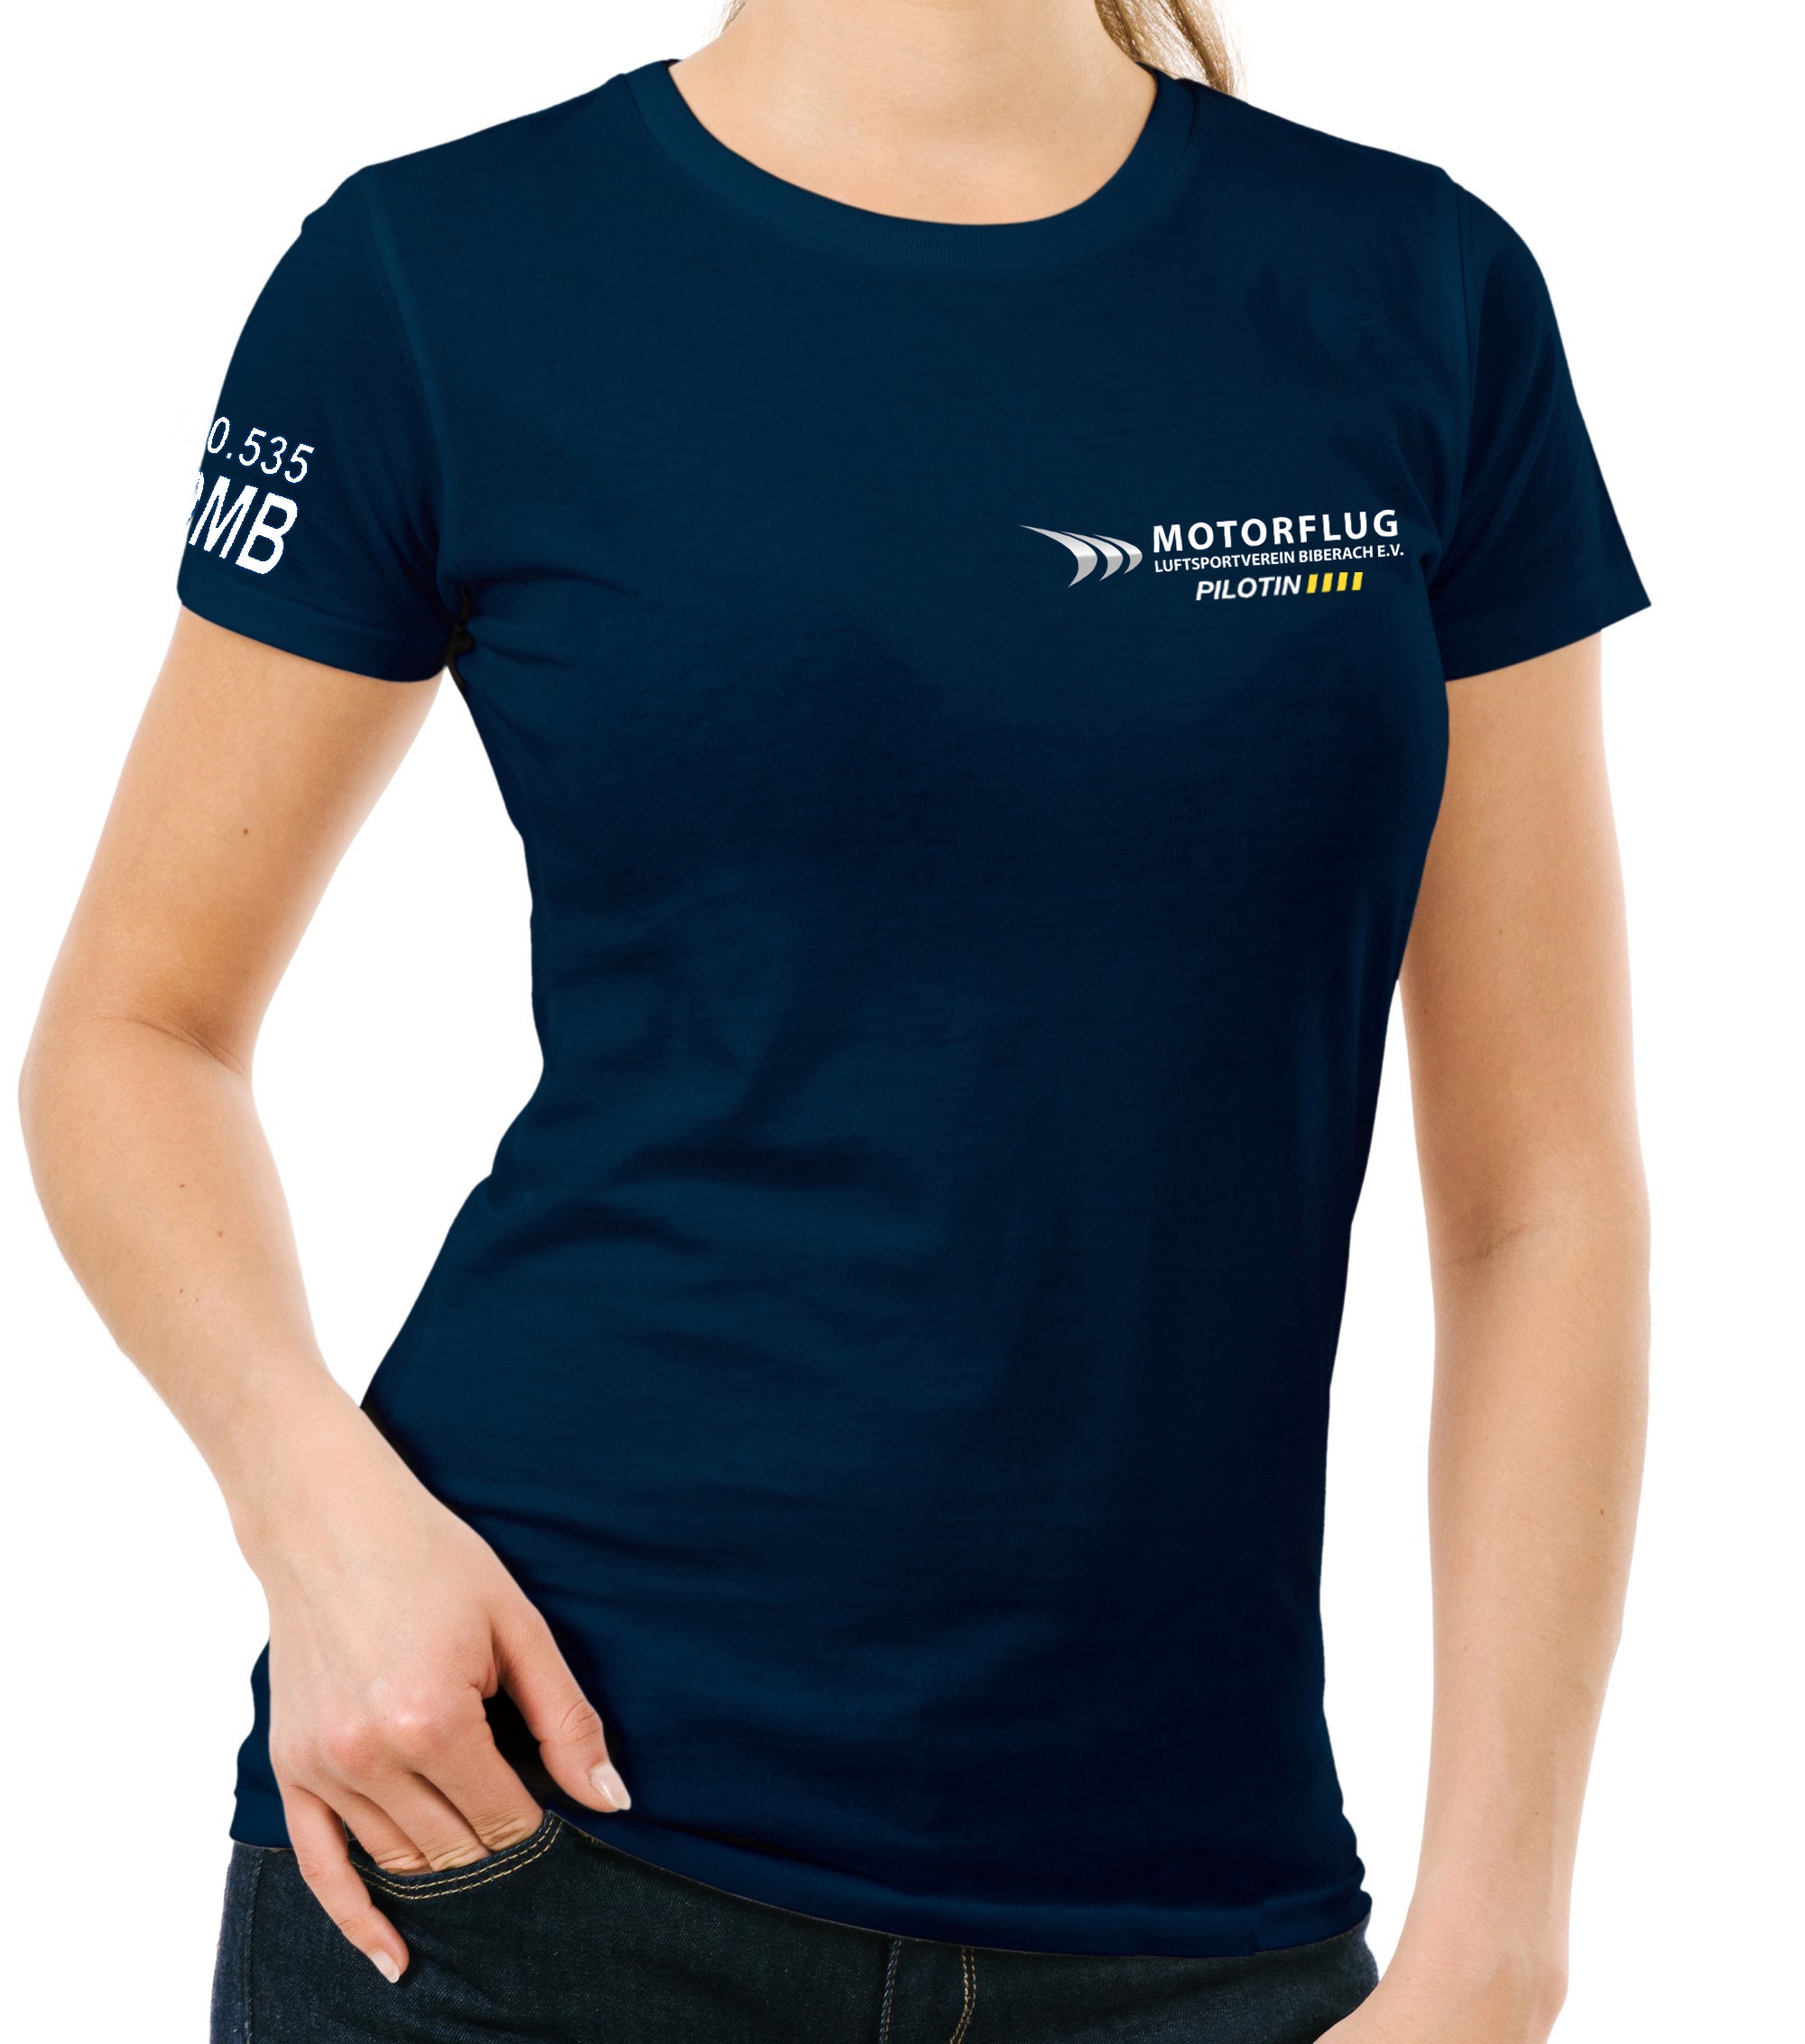 Damen T-Shirt "Pilots Edition" LSV Biberach e.V.